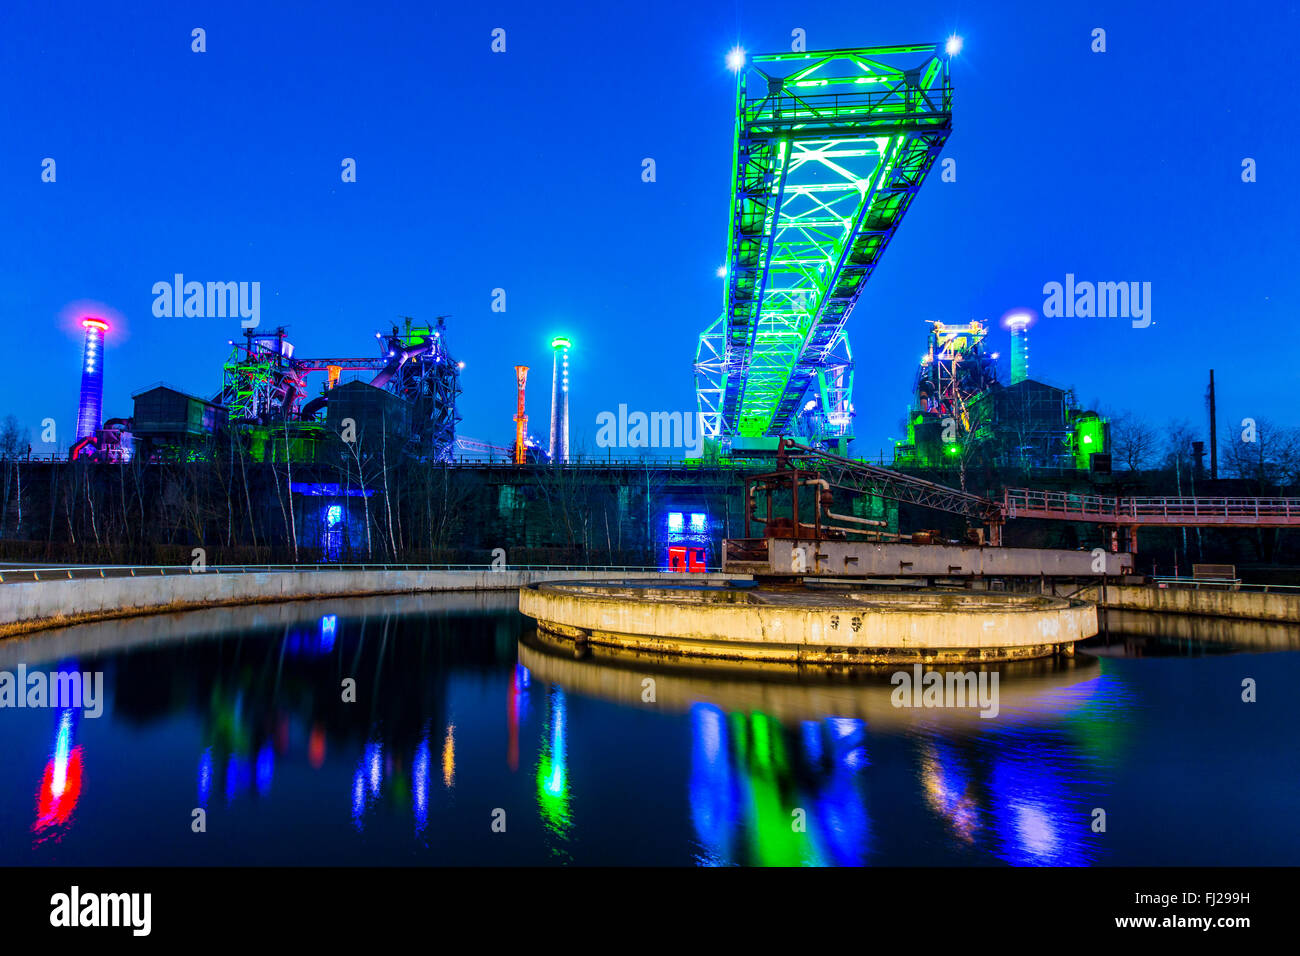 Landschaftspark Duisburg Nord, einem ehemaligen Stahl funktioniert, heute  eine industrielle Welterbe-Aufstellungsort, Duisburg, Deutschland,  nächtliche Beleuchtung Stockfotografie - Alamy